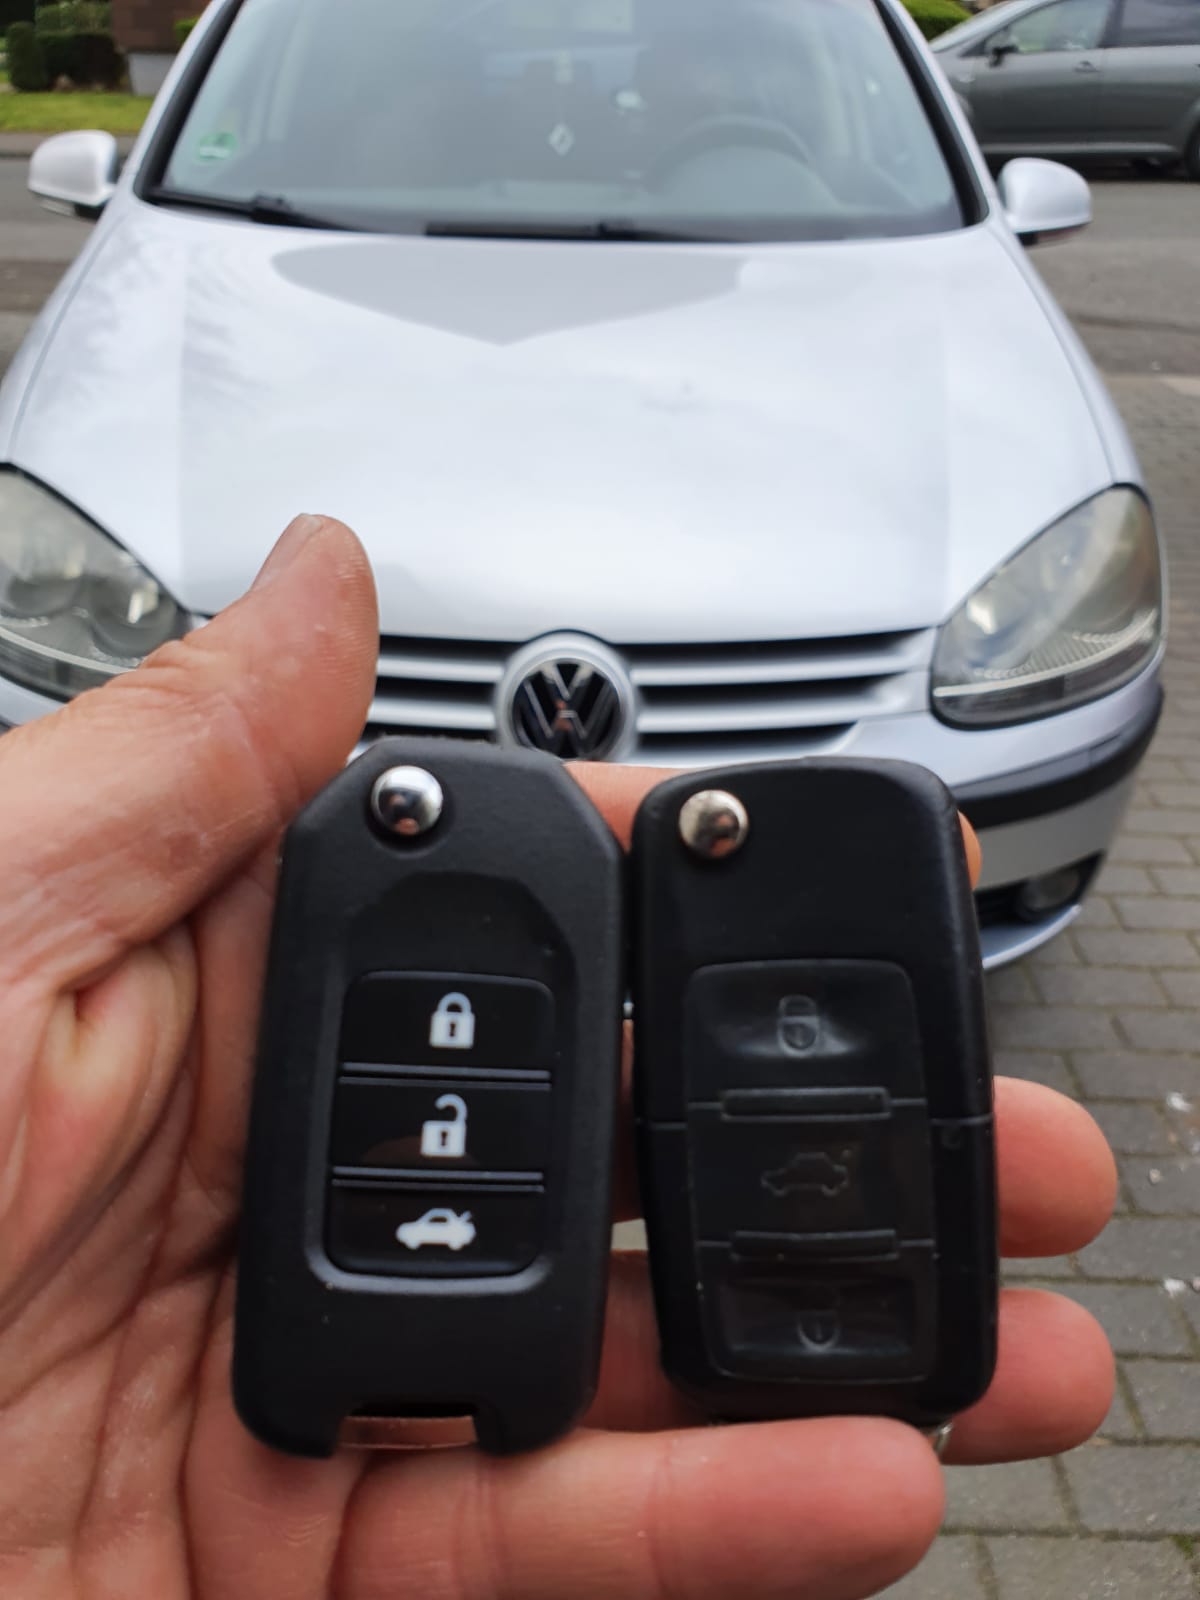 https://ecautoschlussel.de/storage/2021/04/Dusseldorf-Volkswagen-passat-vw-2020-2021-schluessel-autoschluessel-auto-ersatzschluessel-verloren-nachmachen.jpg